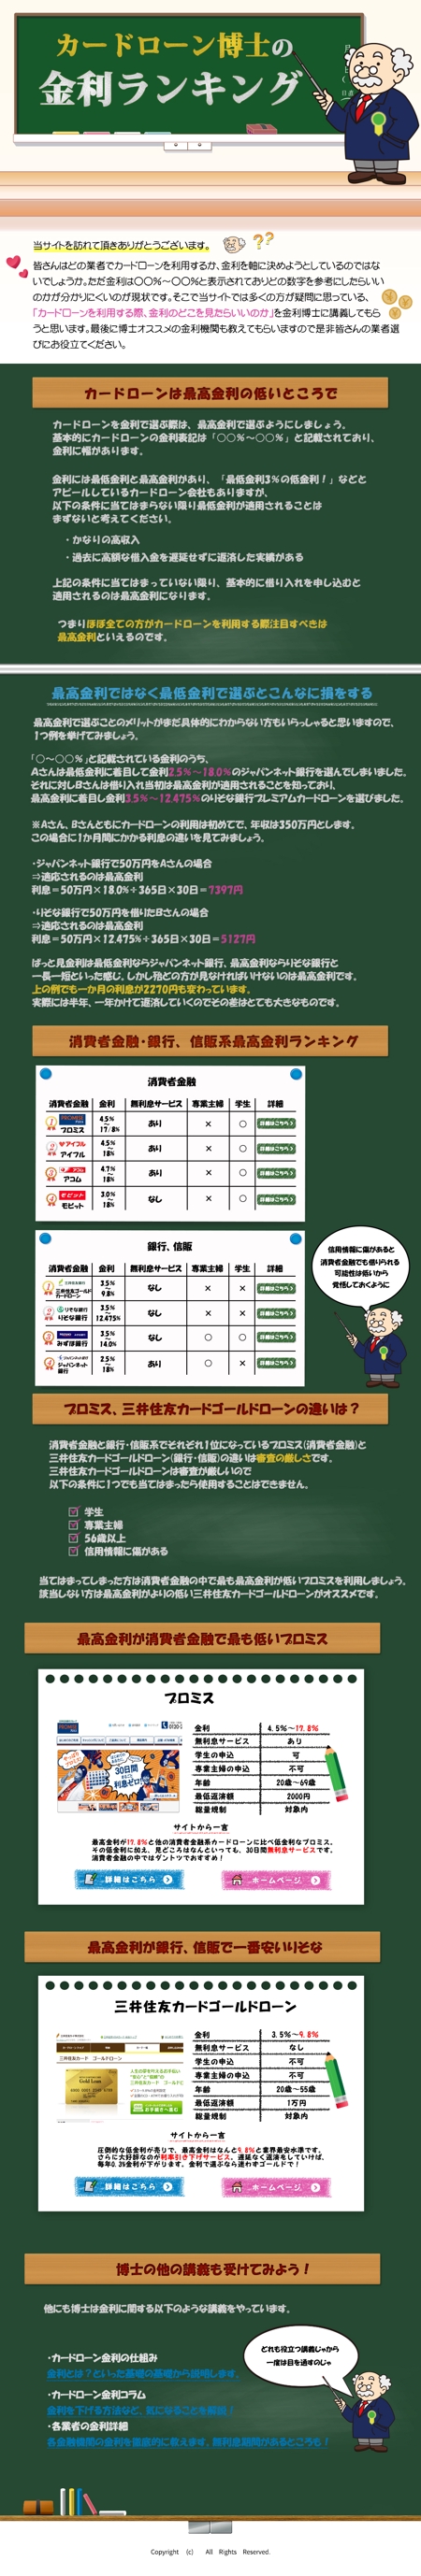 宮本一高 (miyamoto_kazutaka)さんのカードローンサイトのTOPページデザイン依頼の依頼詳細への提案